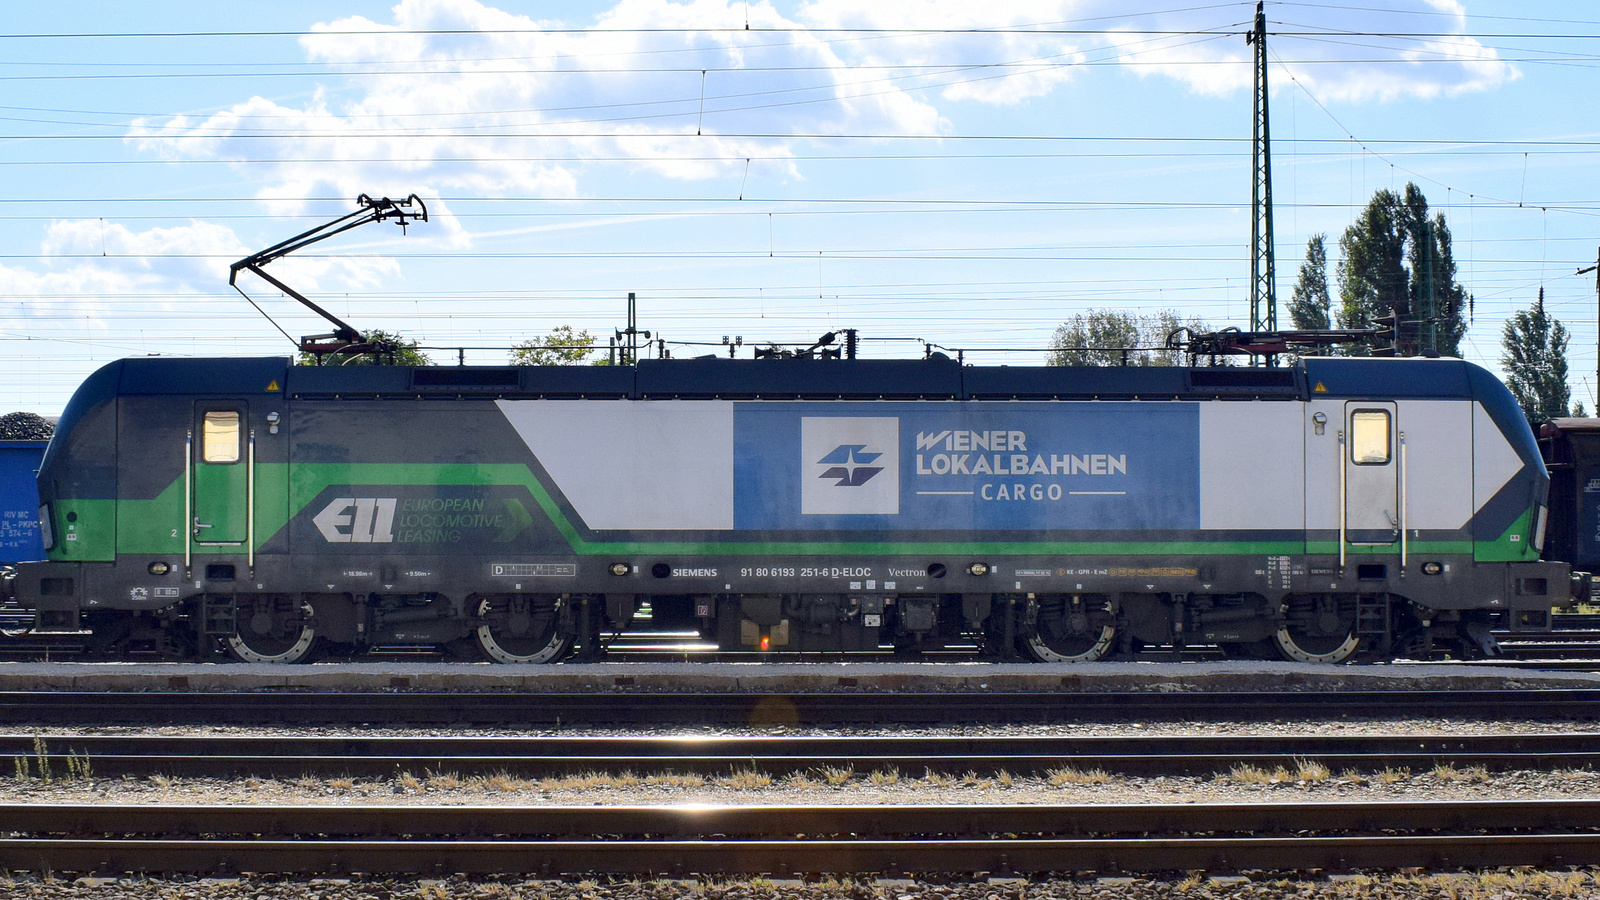 193 251 (Wiener Lokalbahnen Cargo) Vectron